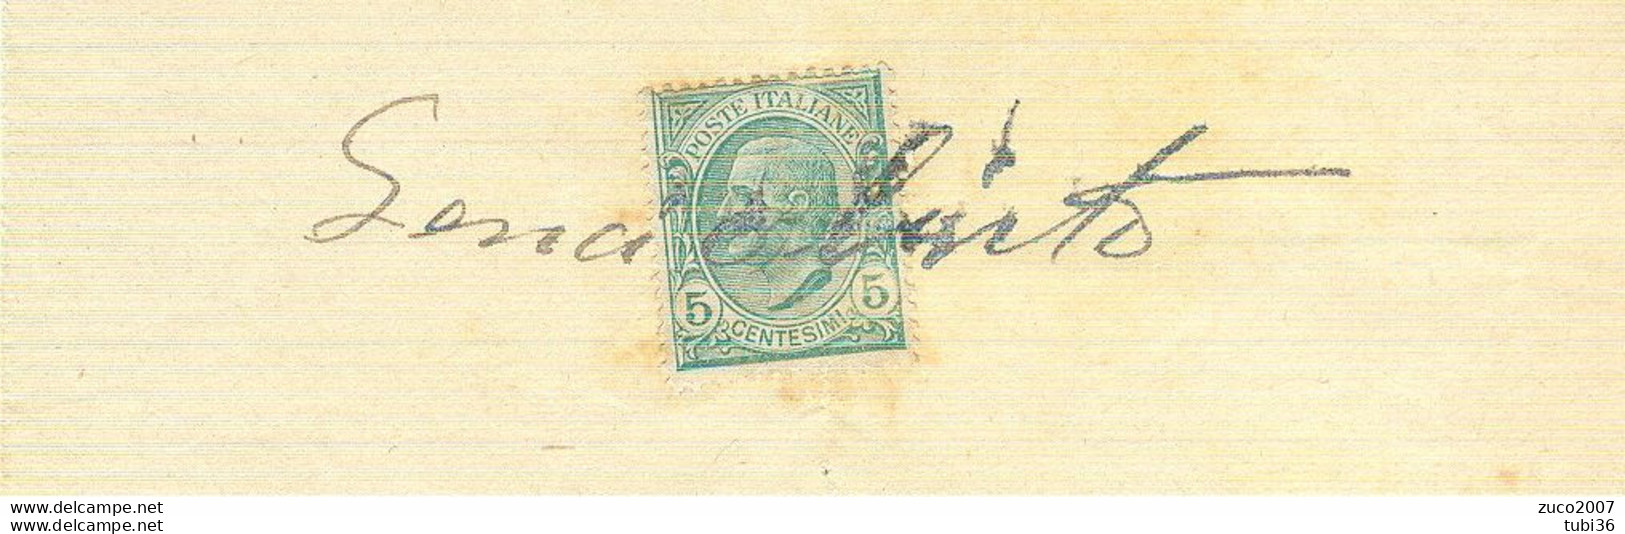 VITTORIO EMANUELE III Cent.5 (s81),SU RICEVUTA PRIVATA,anno 1914,USO MARCA DA BOLLO, - Fiscaux